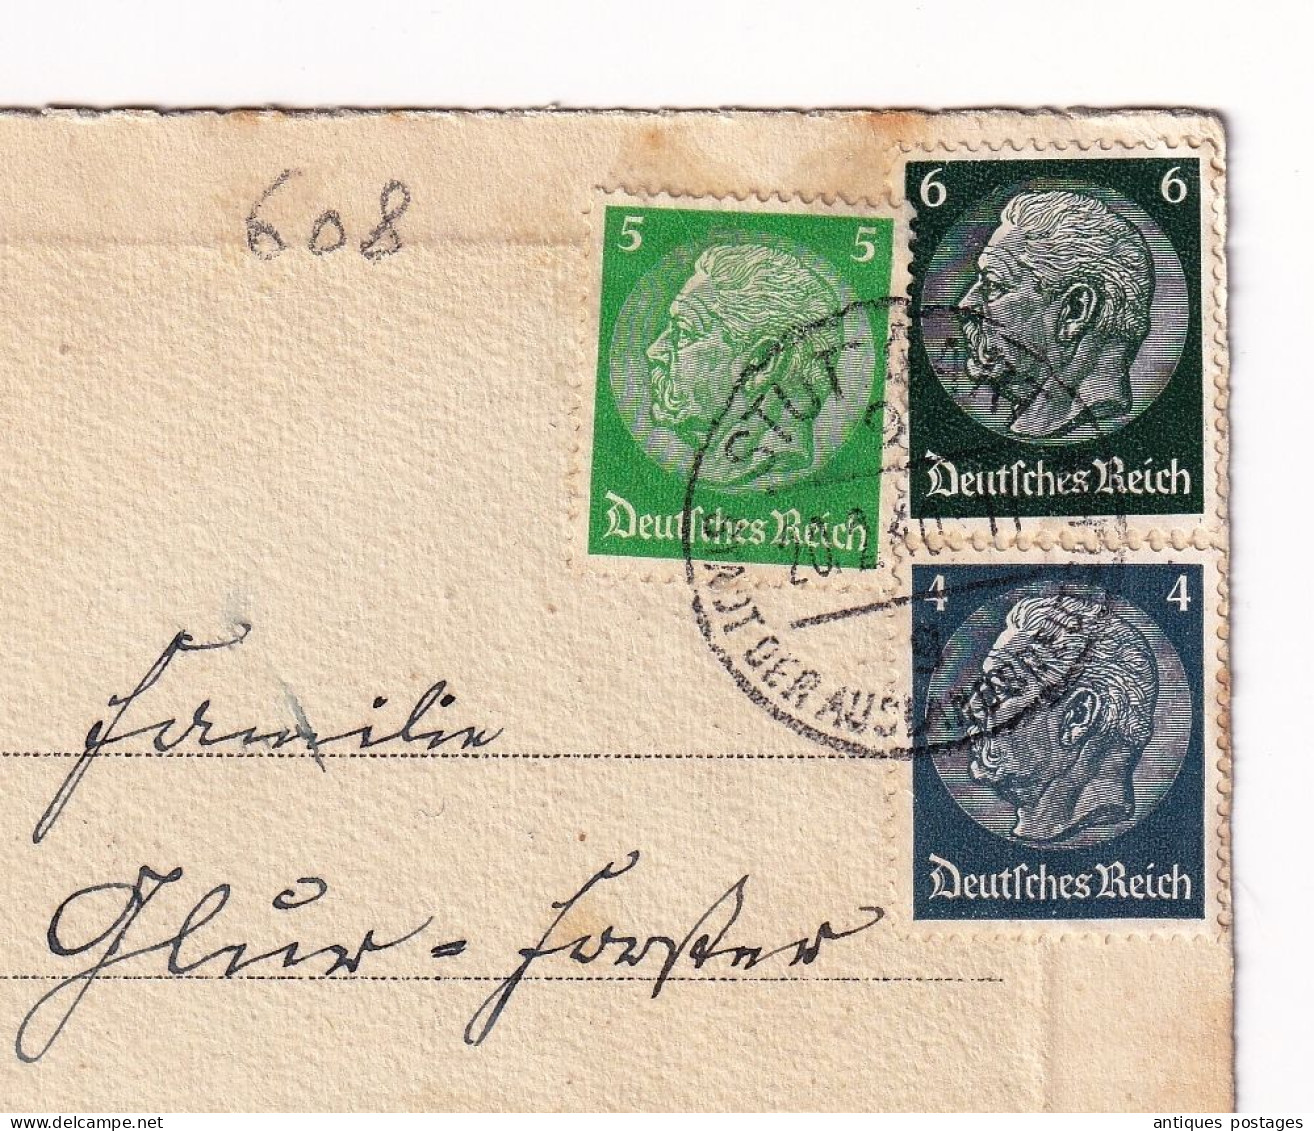 Postkart Stuttgart 1940 Deutschland Original Radierung Handabzug Allemagne Stamp Paul Von Hindenburg - Lettres & Documents